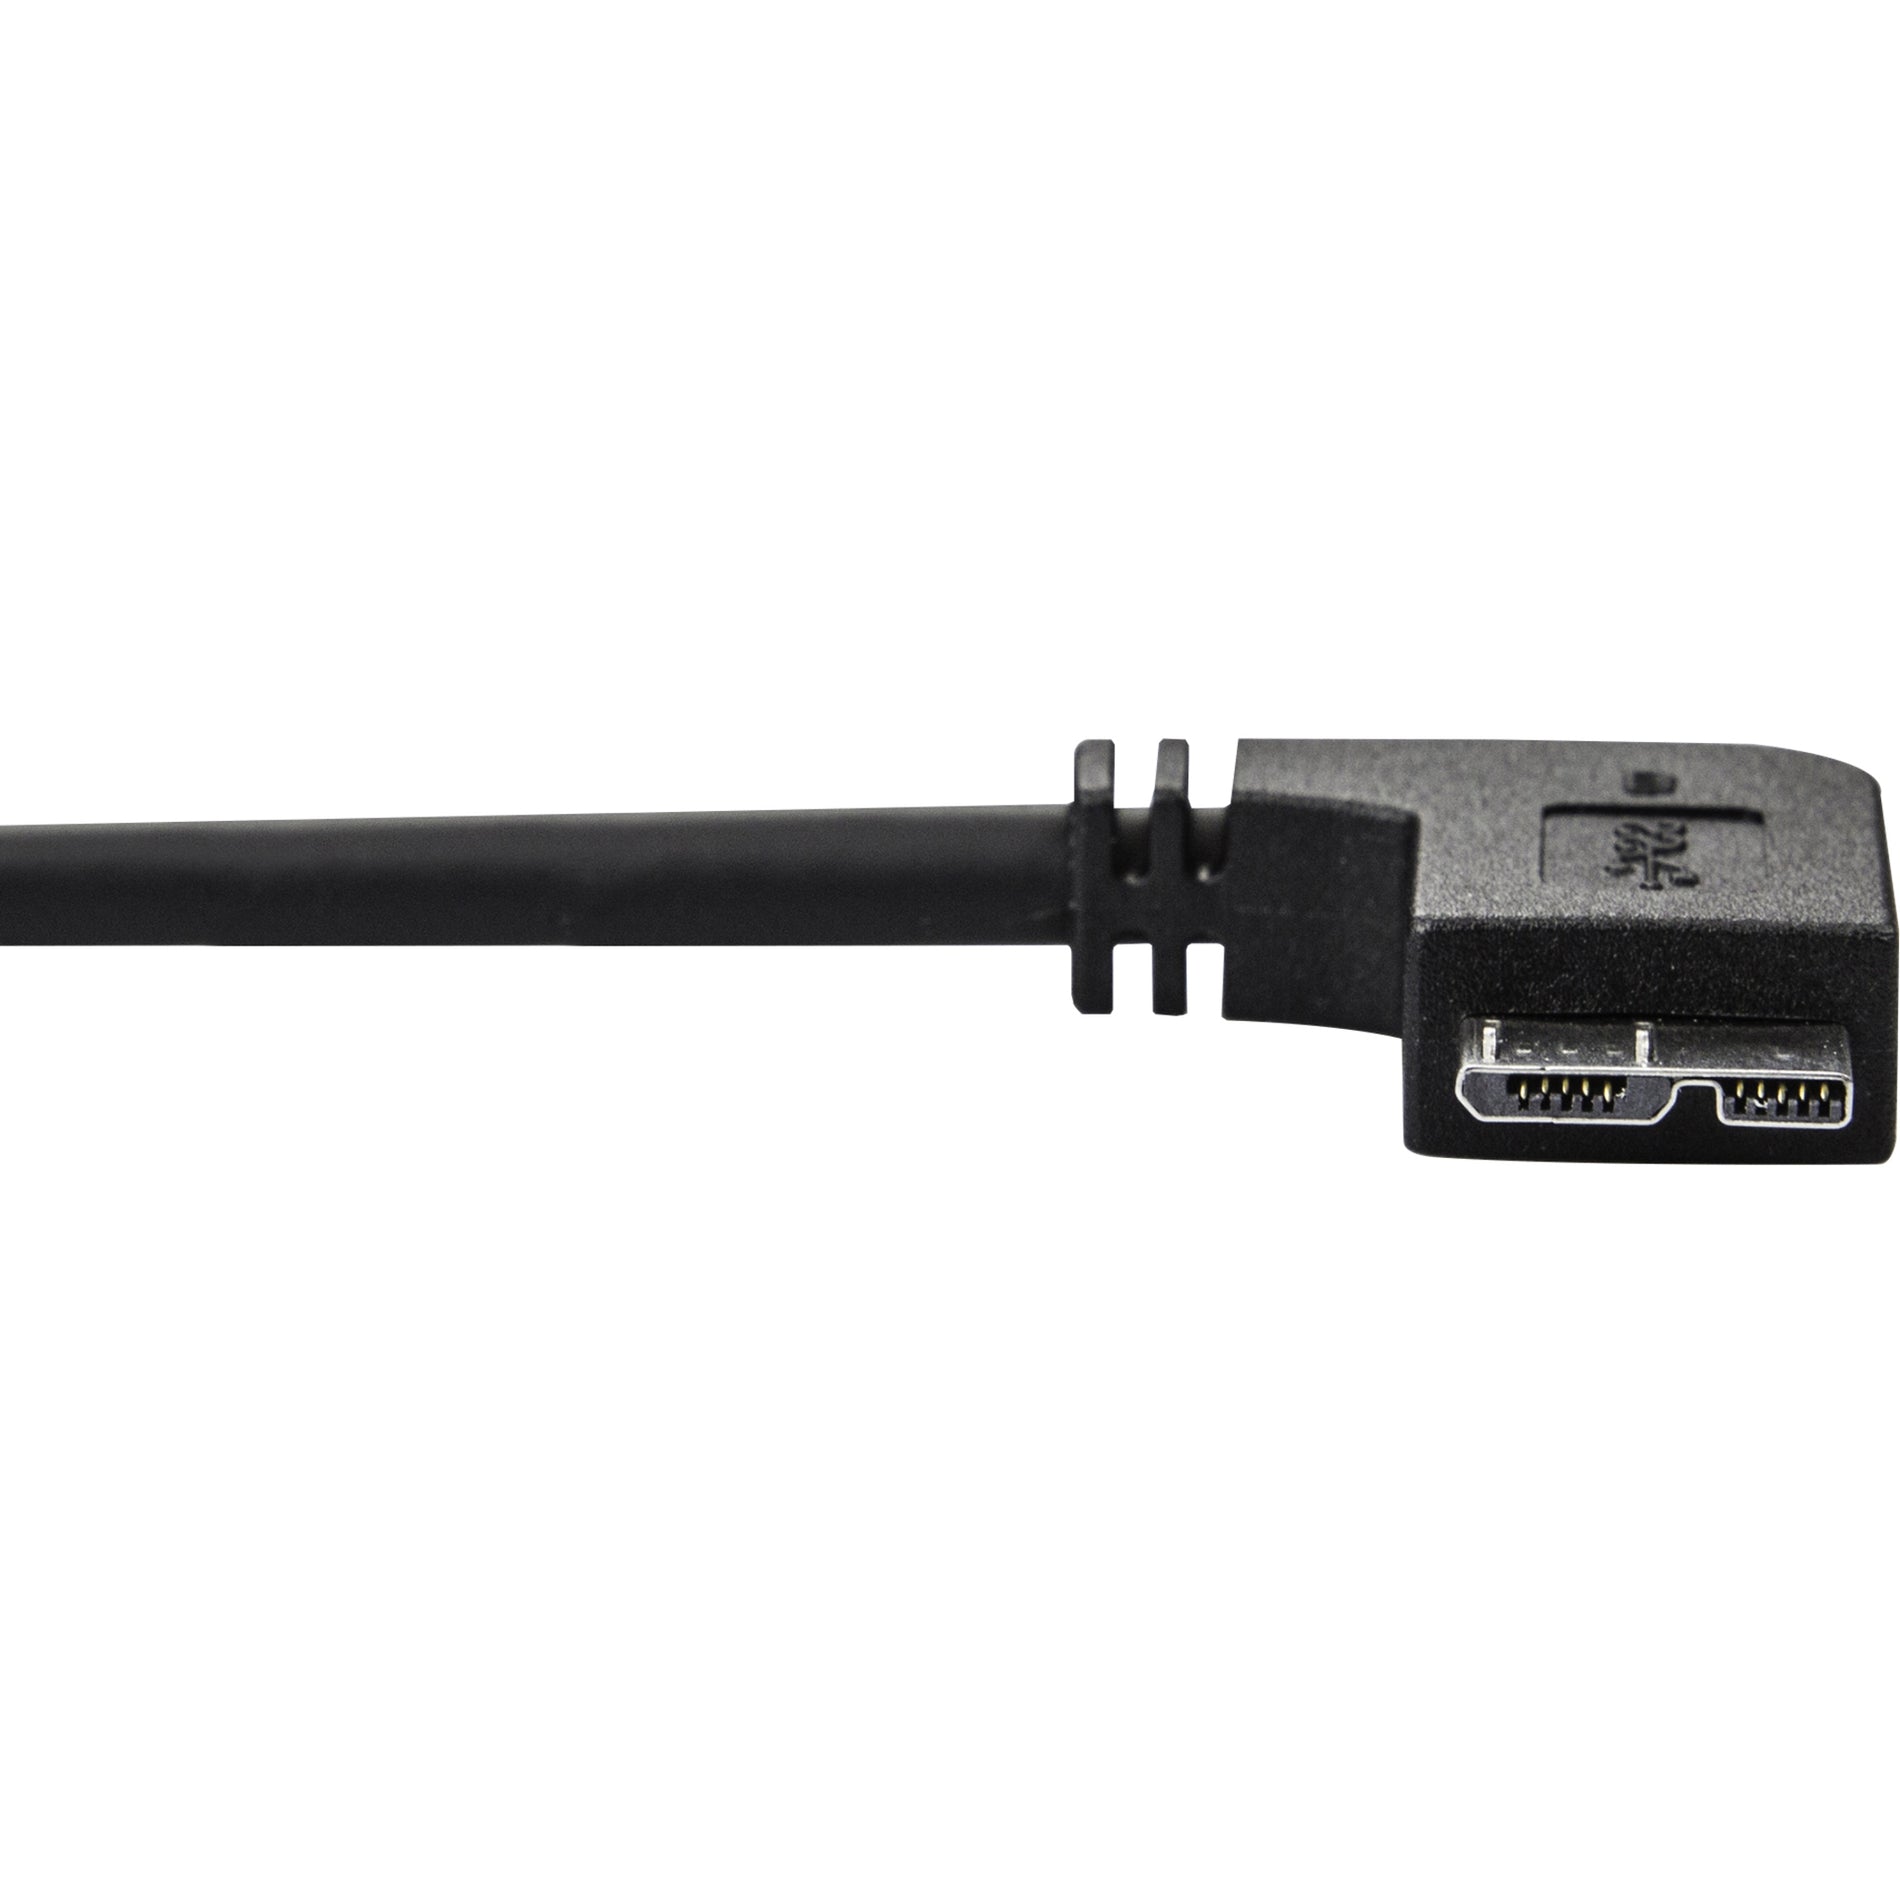 Marca: StarTech.com  Cable USB 3.0 delgado Micro USB3AU50CMLS - M/M - Micro-USB con ángulo izquierdo - 05m (20 pulgadas) Flexible Resistente a la tensión Resistente al daño Carga Resistente a la flexión.